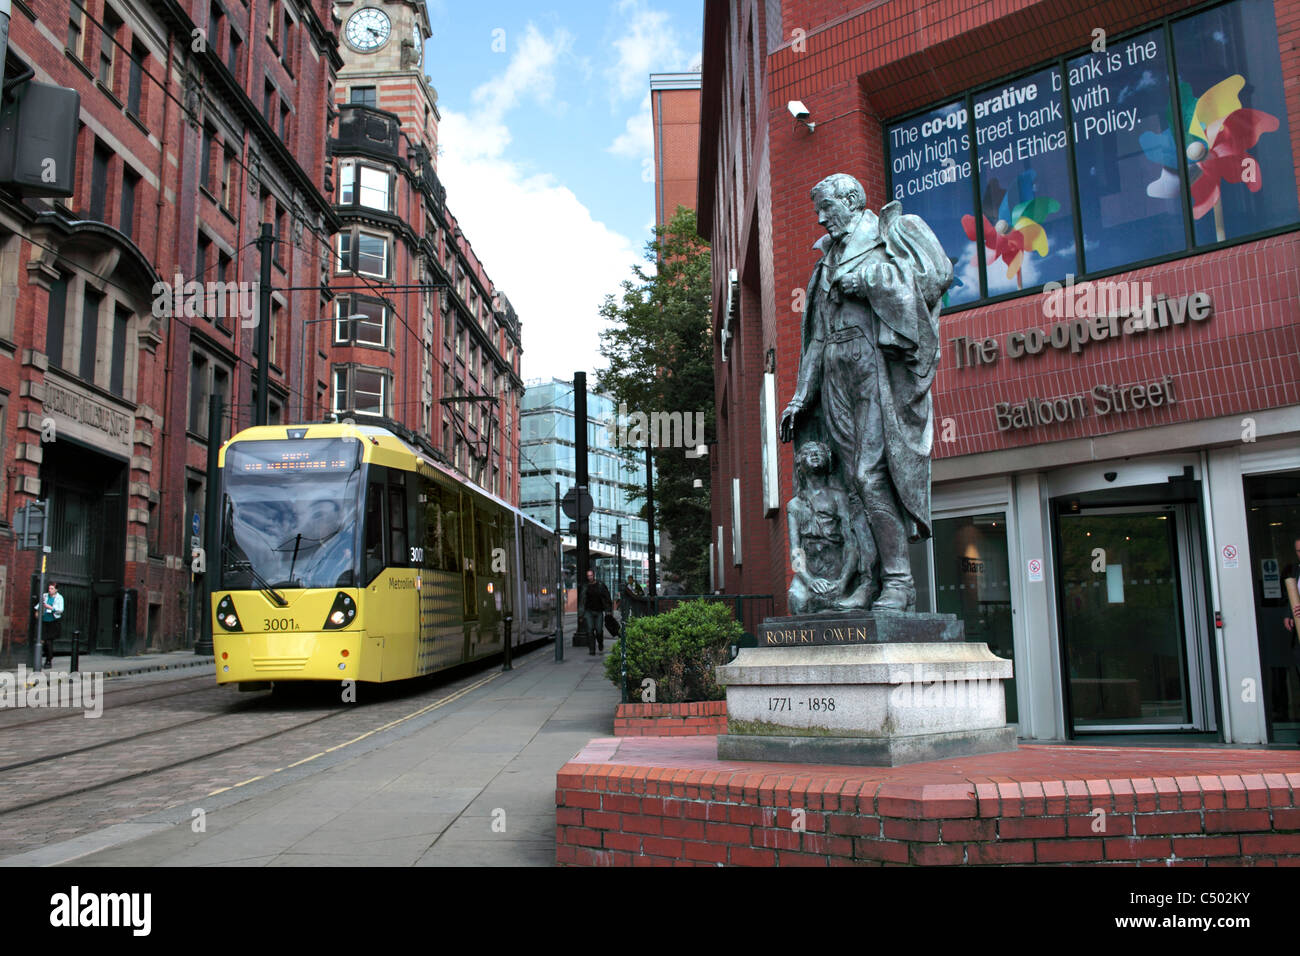 Eine Straßenbahn Ballon Street, Manchester eine Statue von Robert Owen außerhalb der Co-op Bank weitergeben. Stockfoto